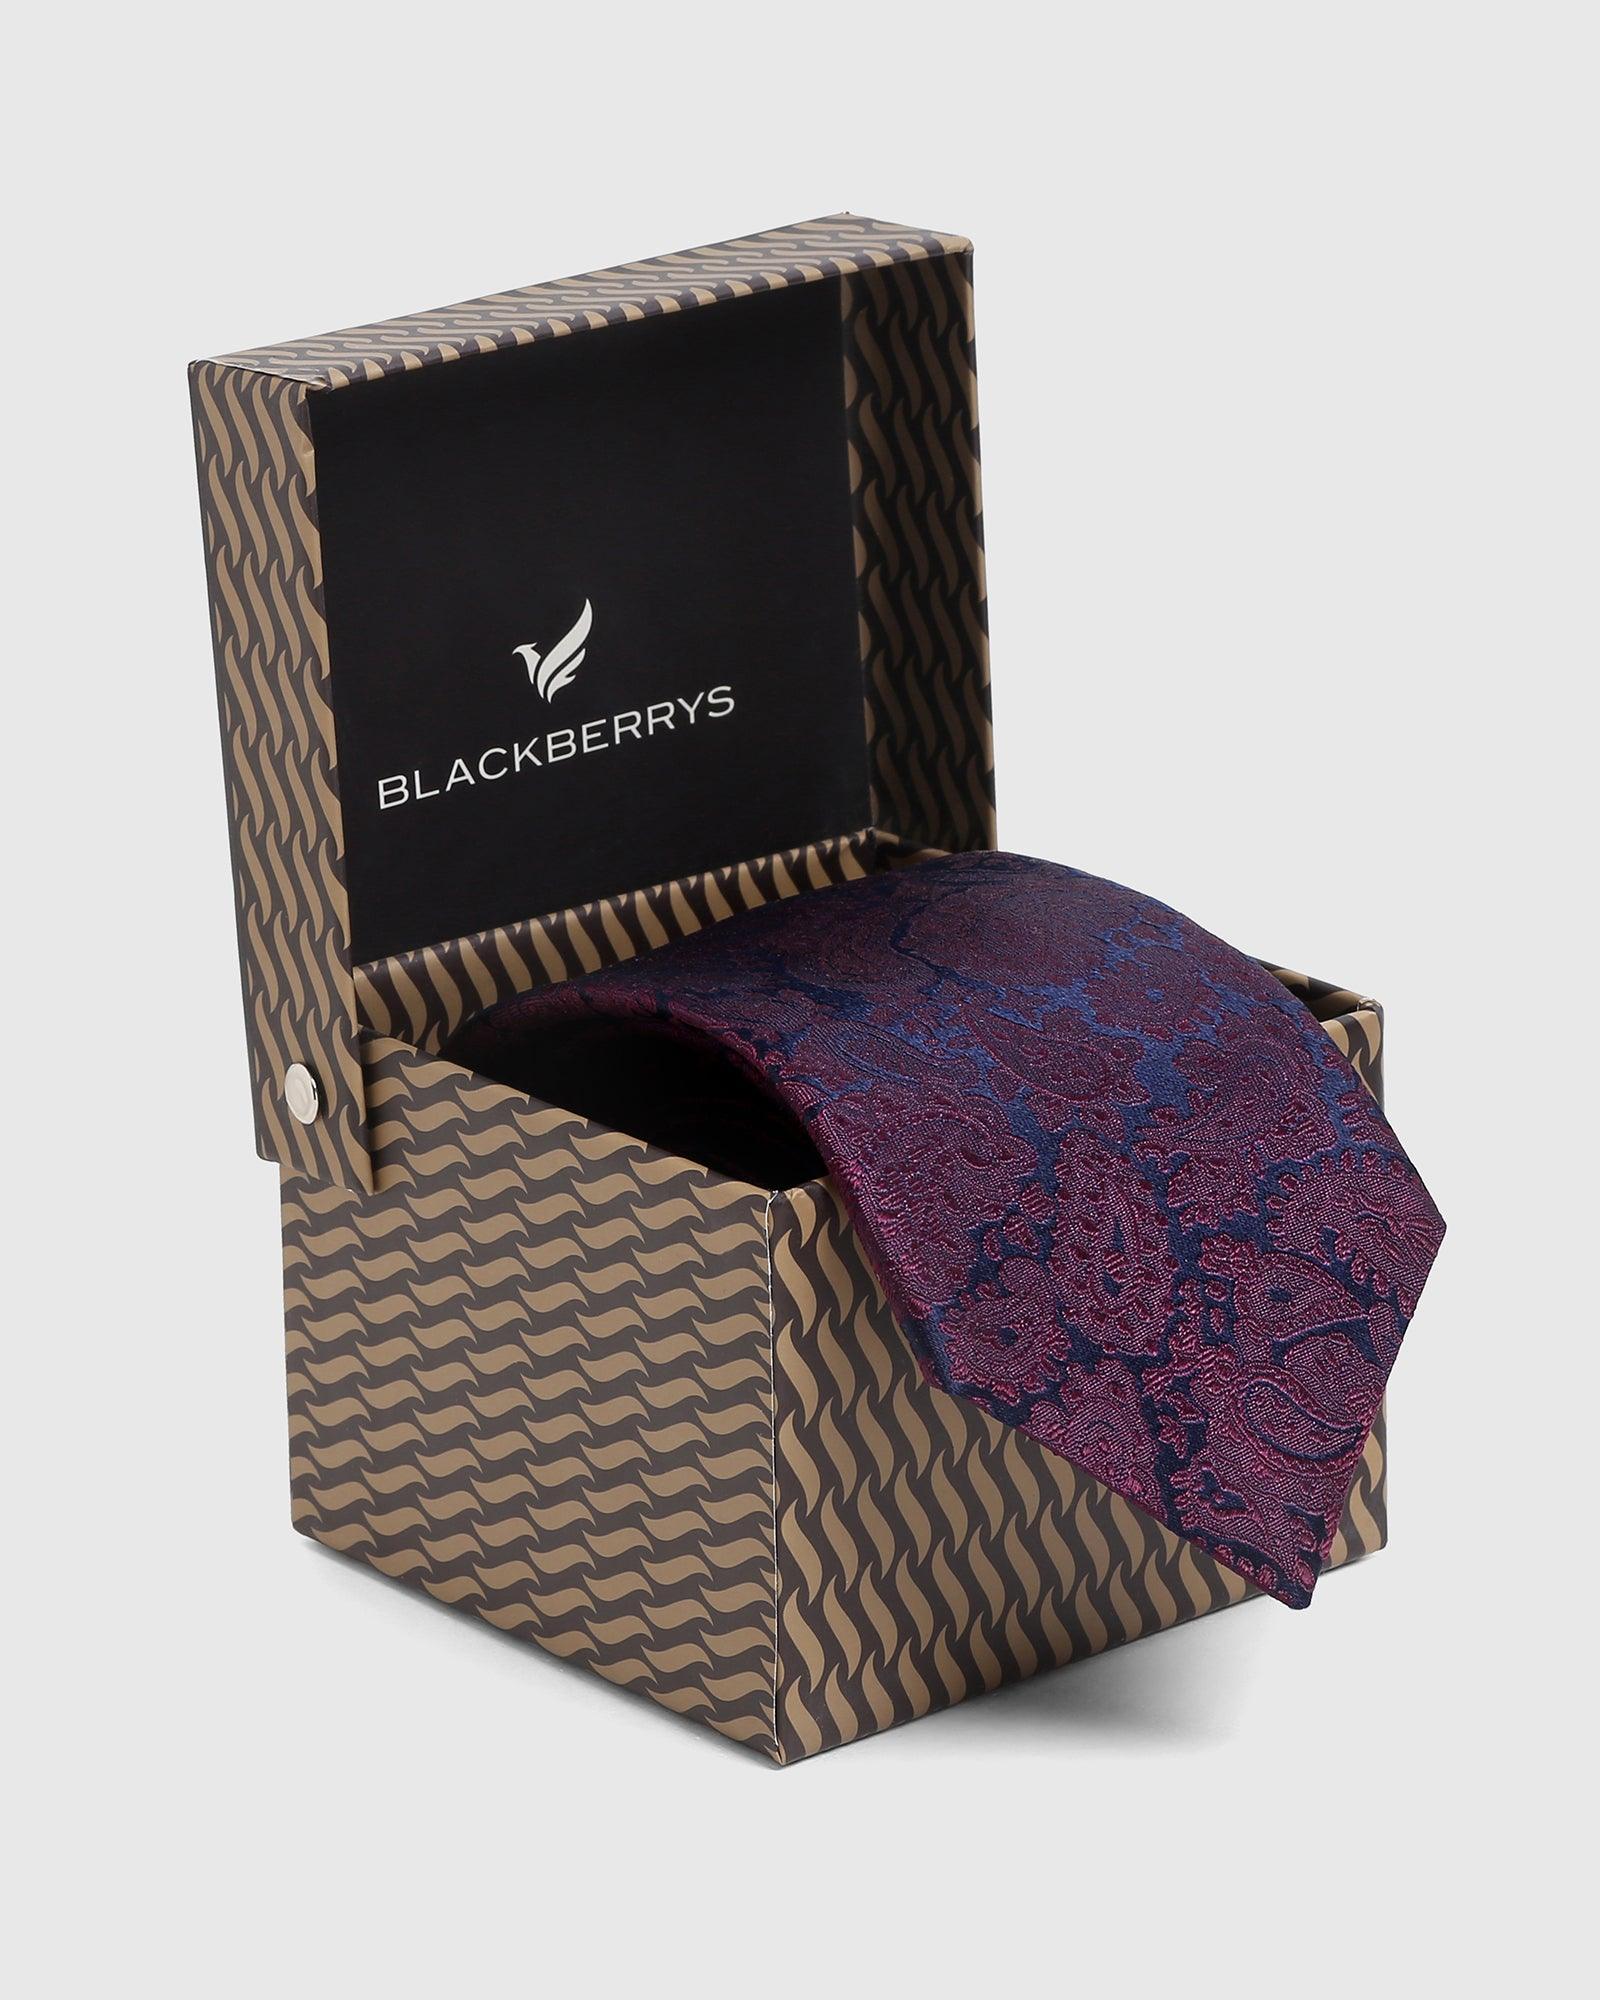 Silk Wine Printed Tie - Saden